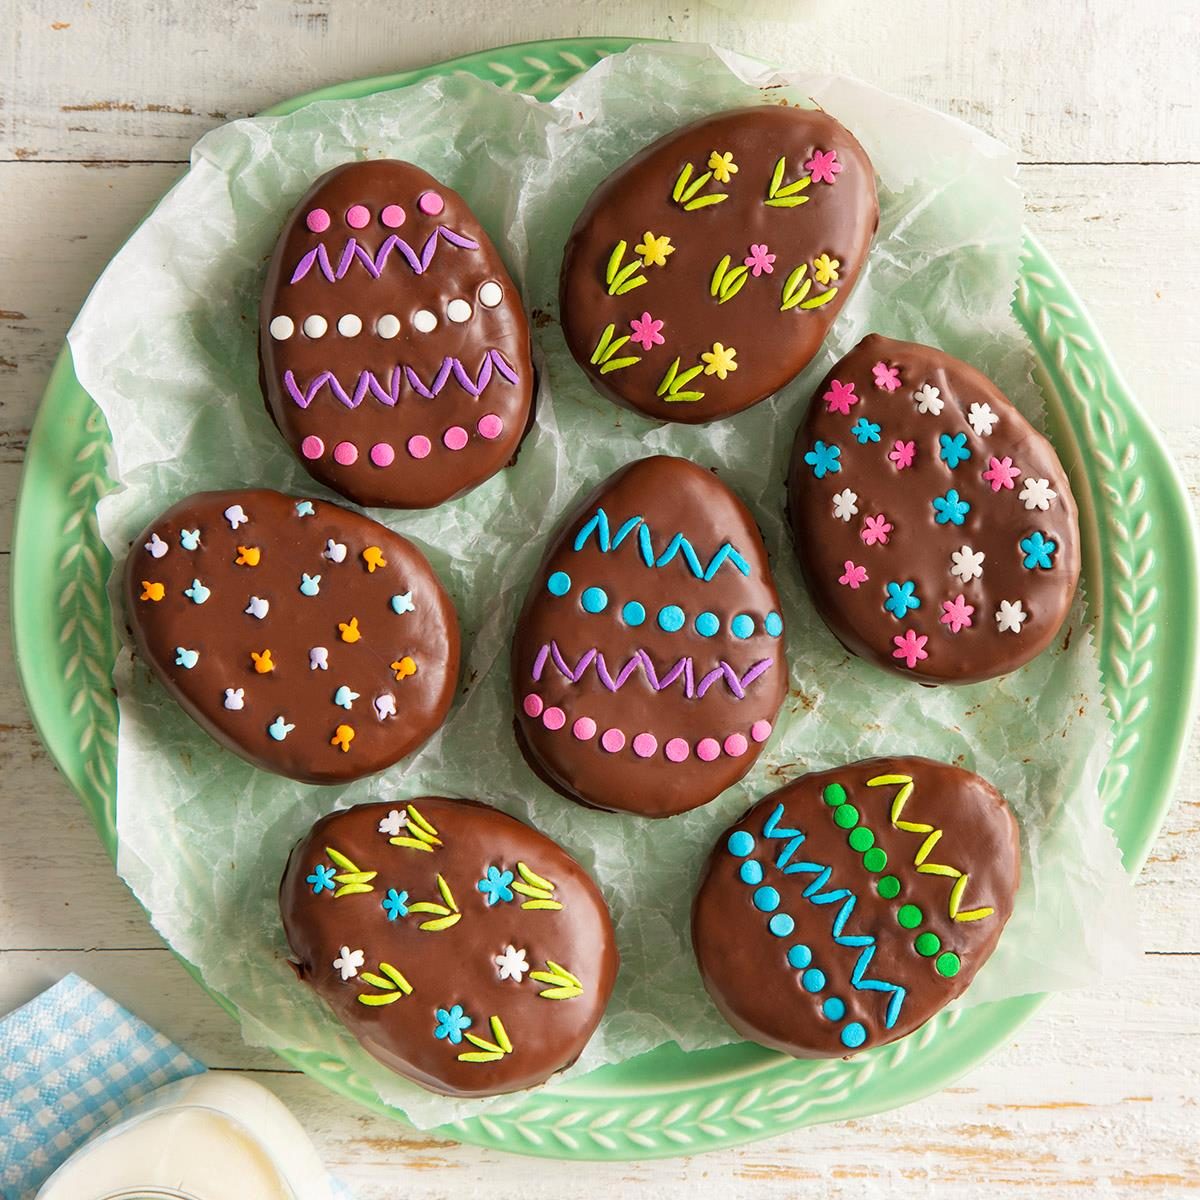 https://www.tasteofhome.com/wp-content/uploads/2018/01/Homemade-Chocolate-Easter-Eggs_EXPS_FT22_17503_F_0322_1.jpg